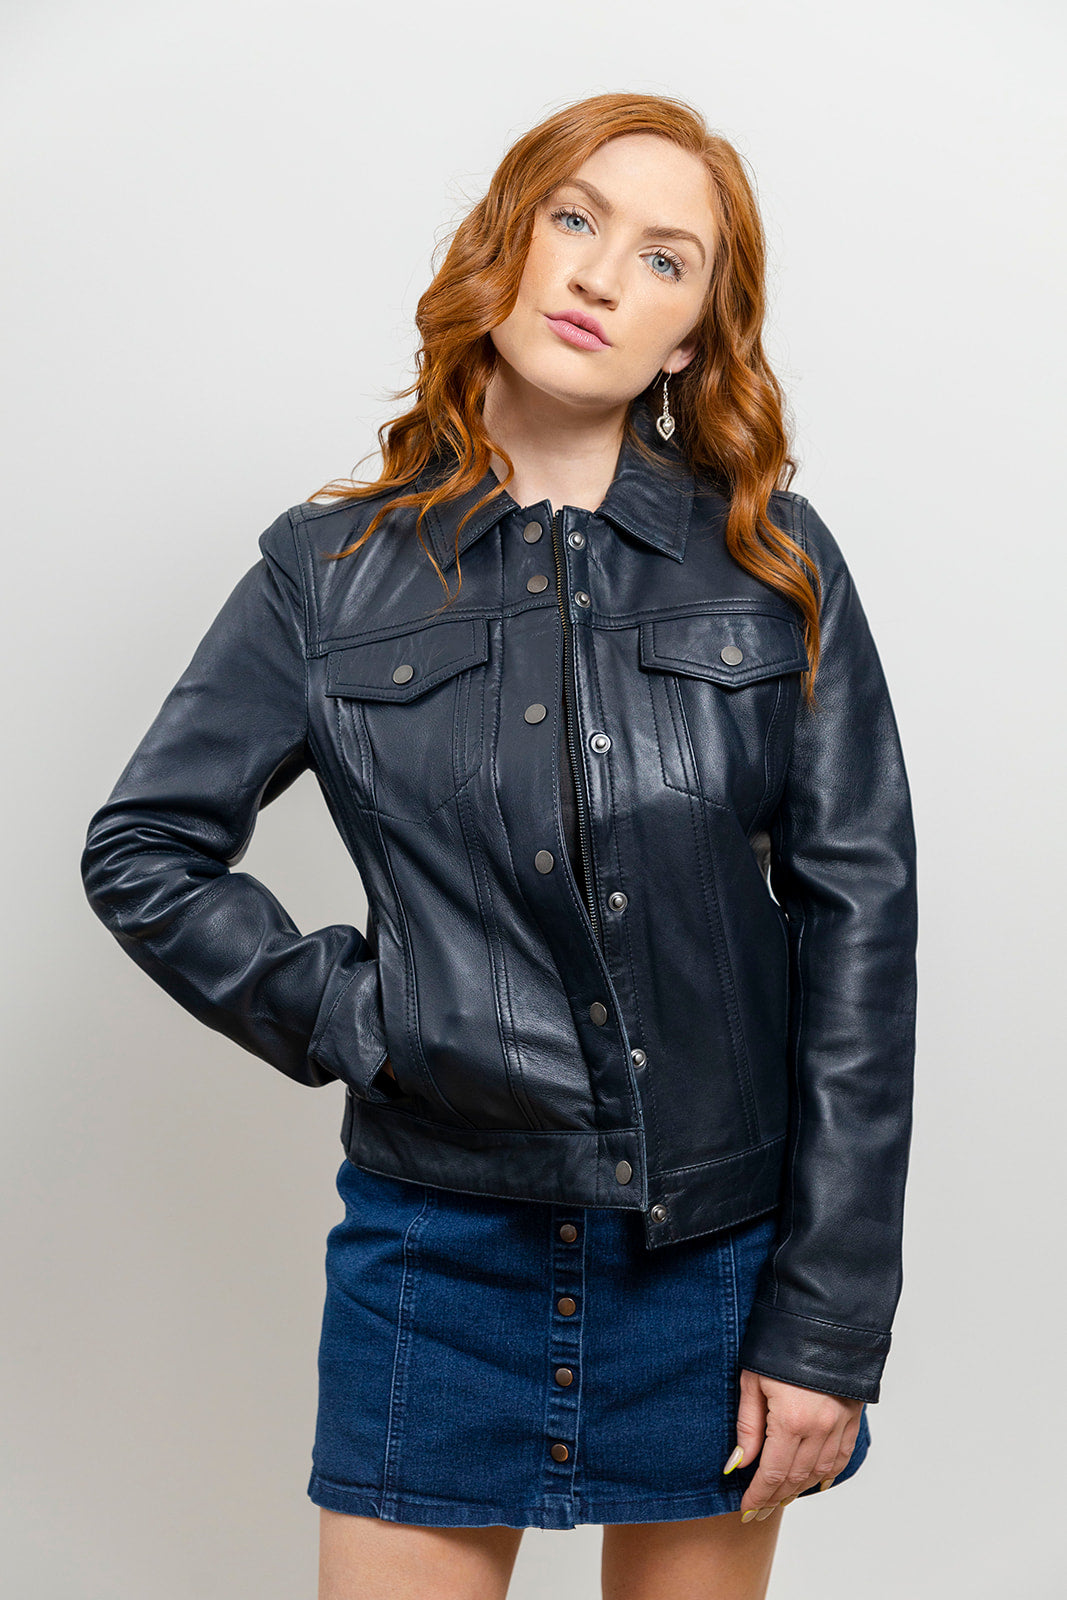 Madison Womens Fashion Leather Jacket Blue